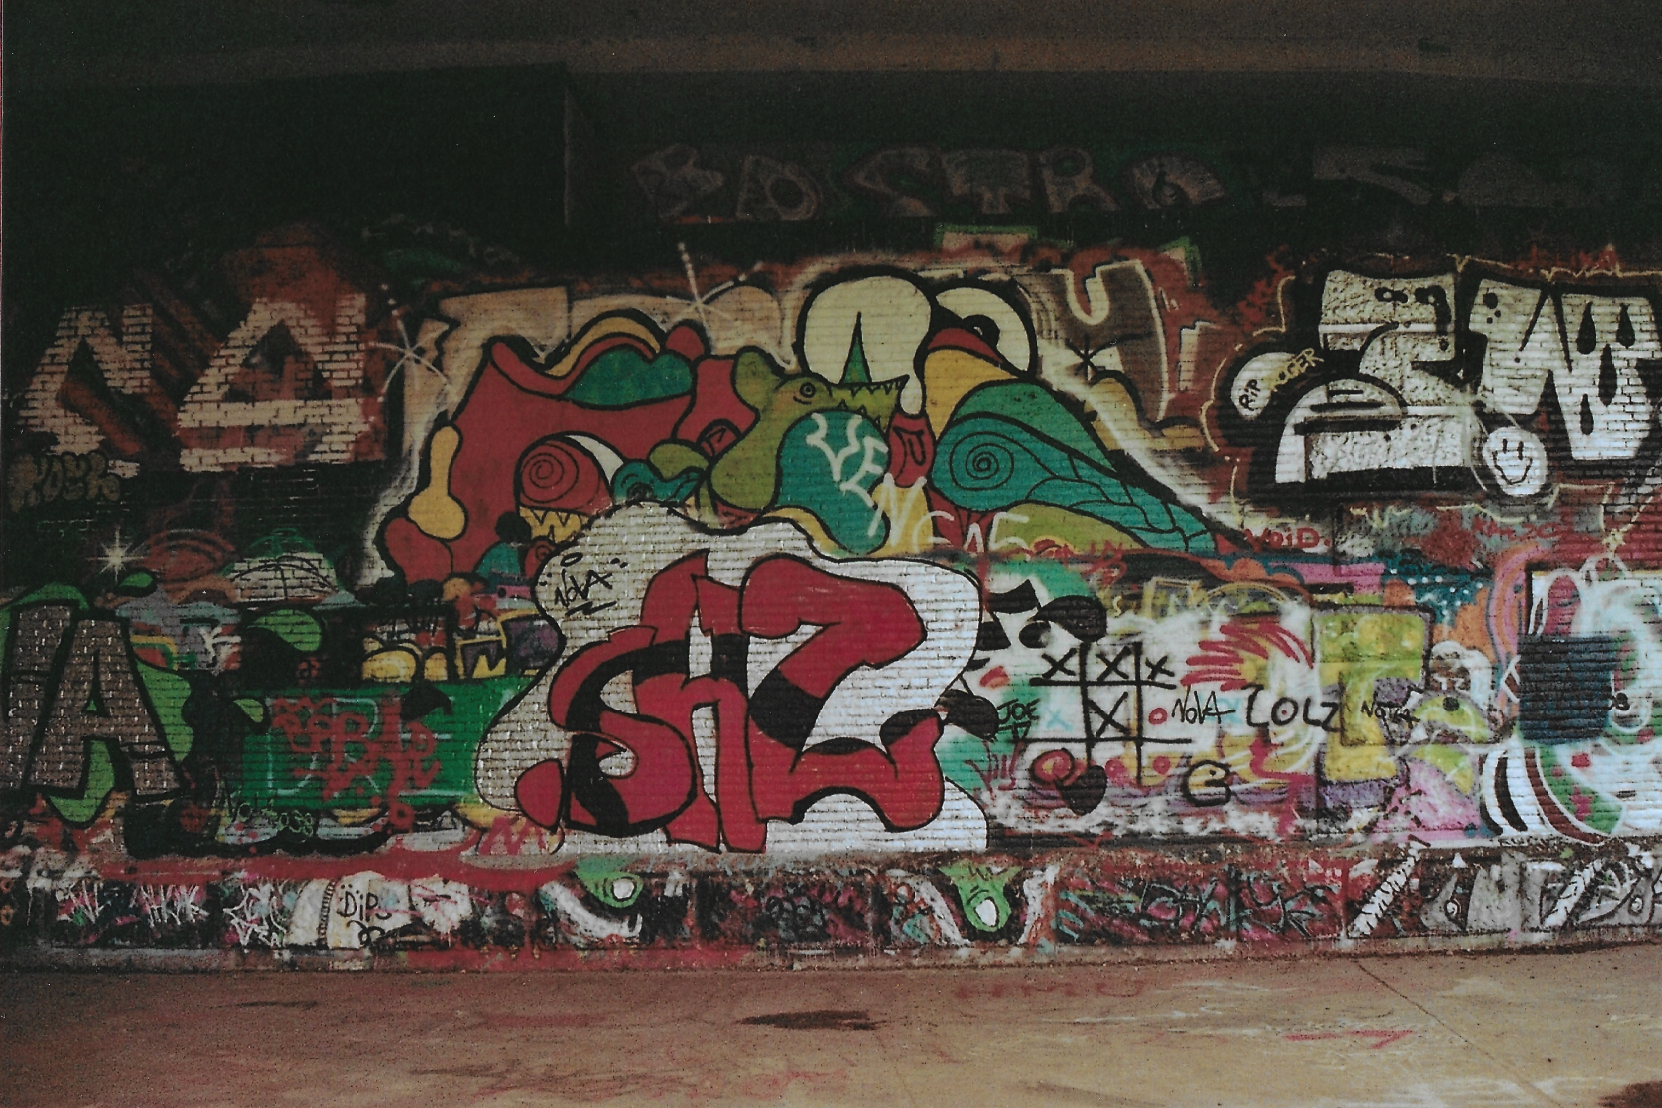 analog picture of graffiti walls